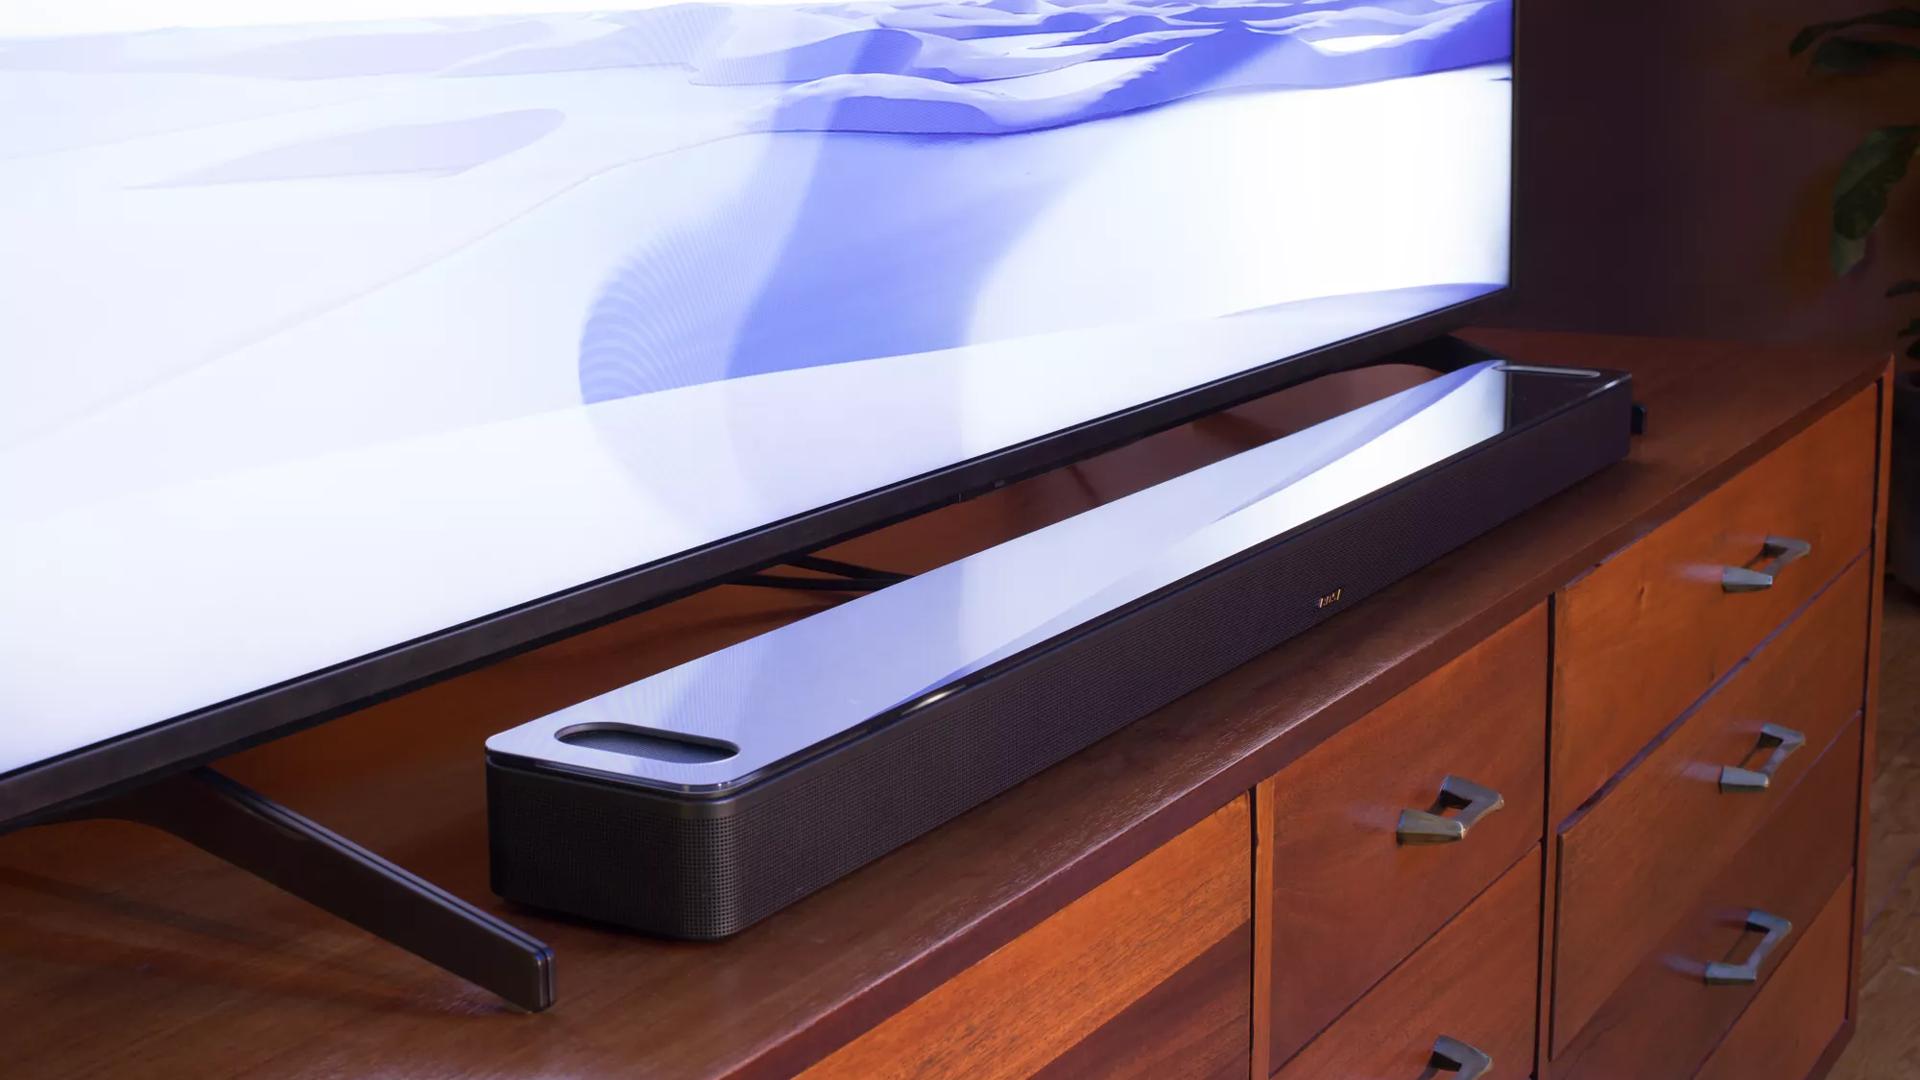 Barre de son intelligente Bose 900 sur une console devant un téléviseur